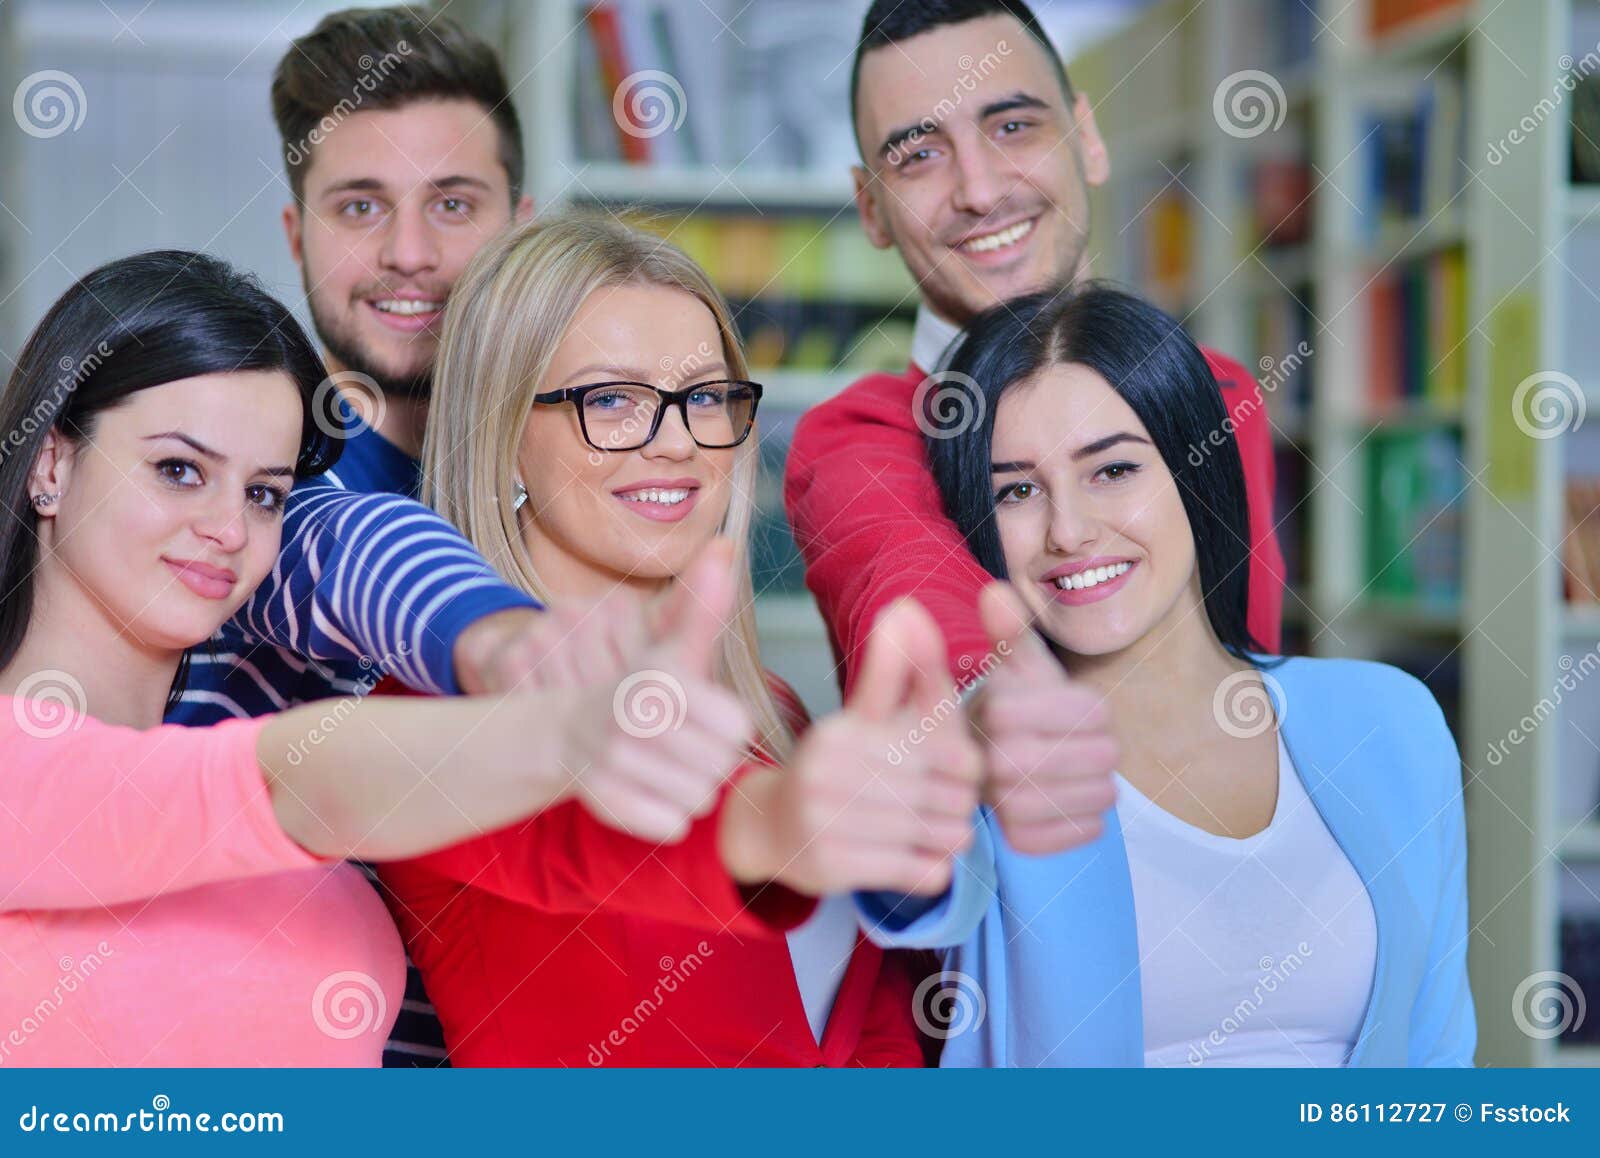 学生年轻人学会微笑的横幅人民的画象图书馆 库存照片. 图片 包括有 愉快, 全景, 学院, 纵向, 钞票 - 136871978